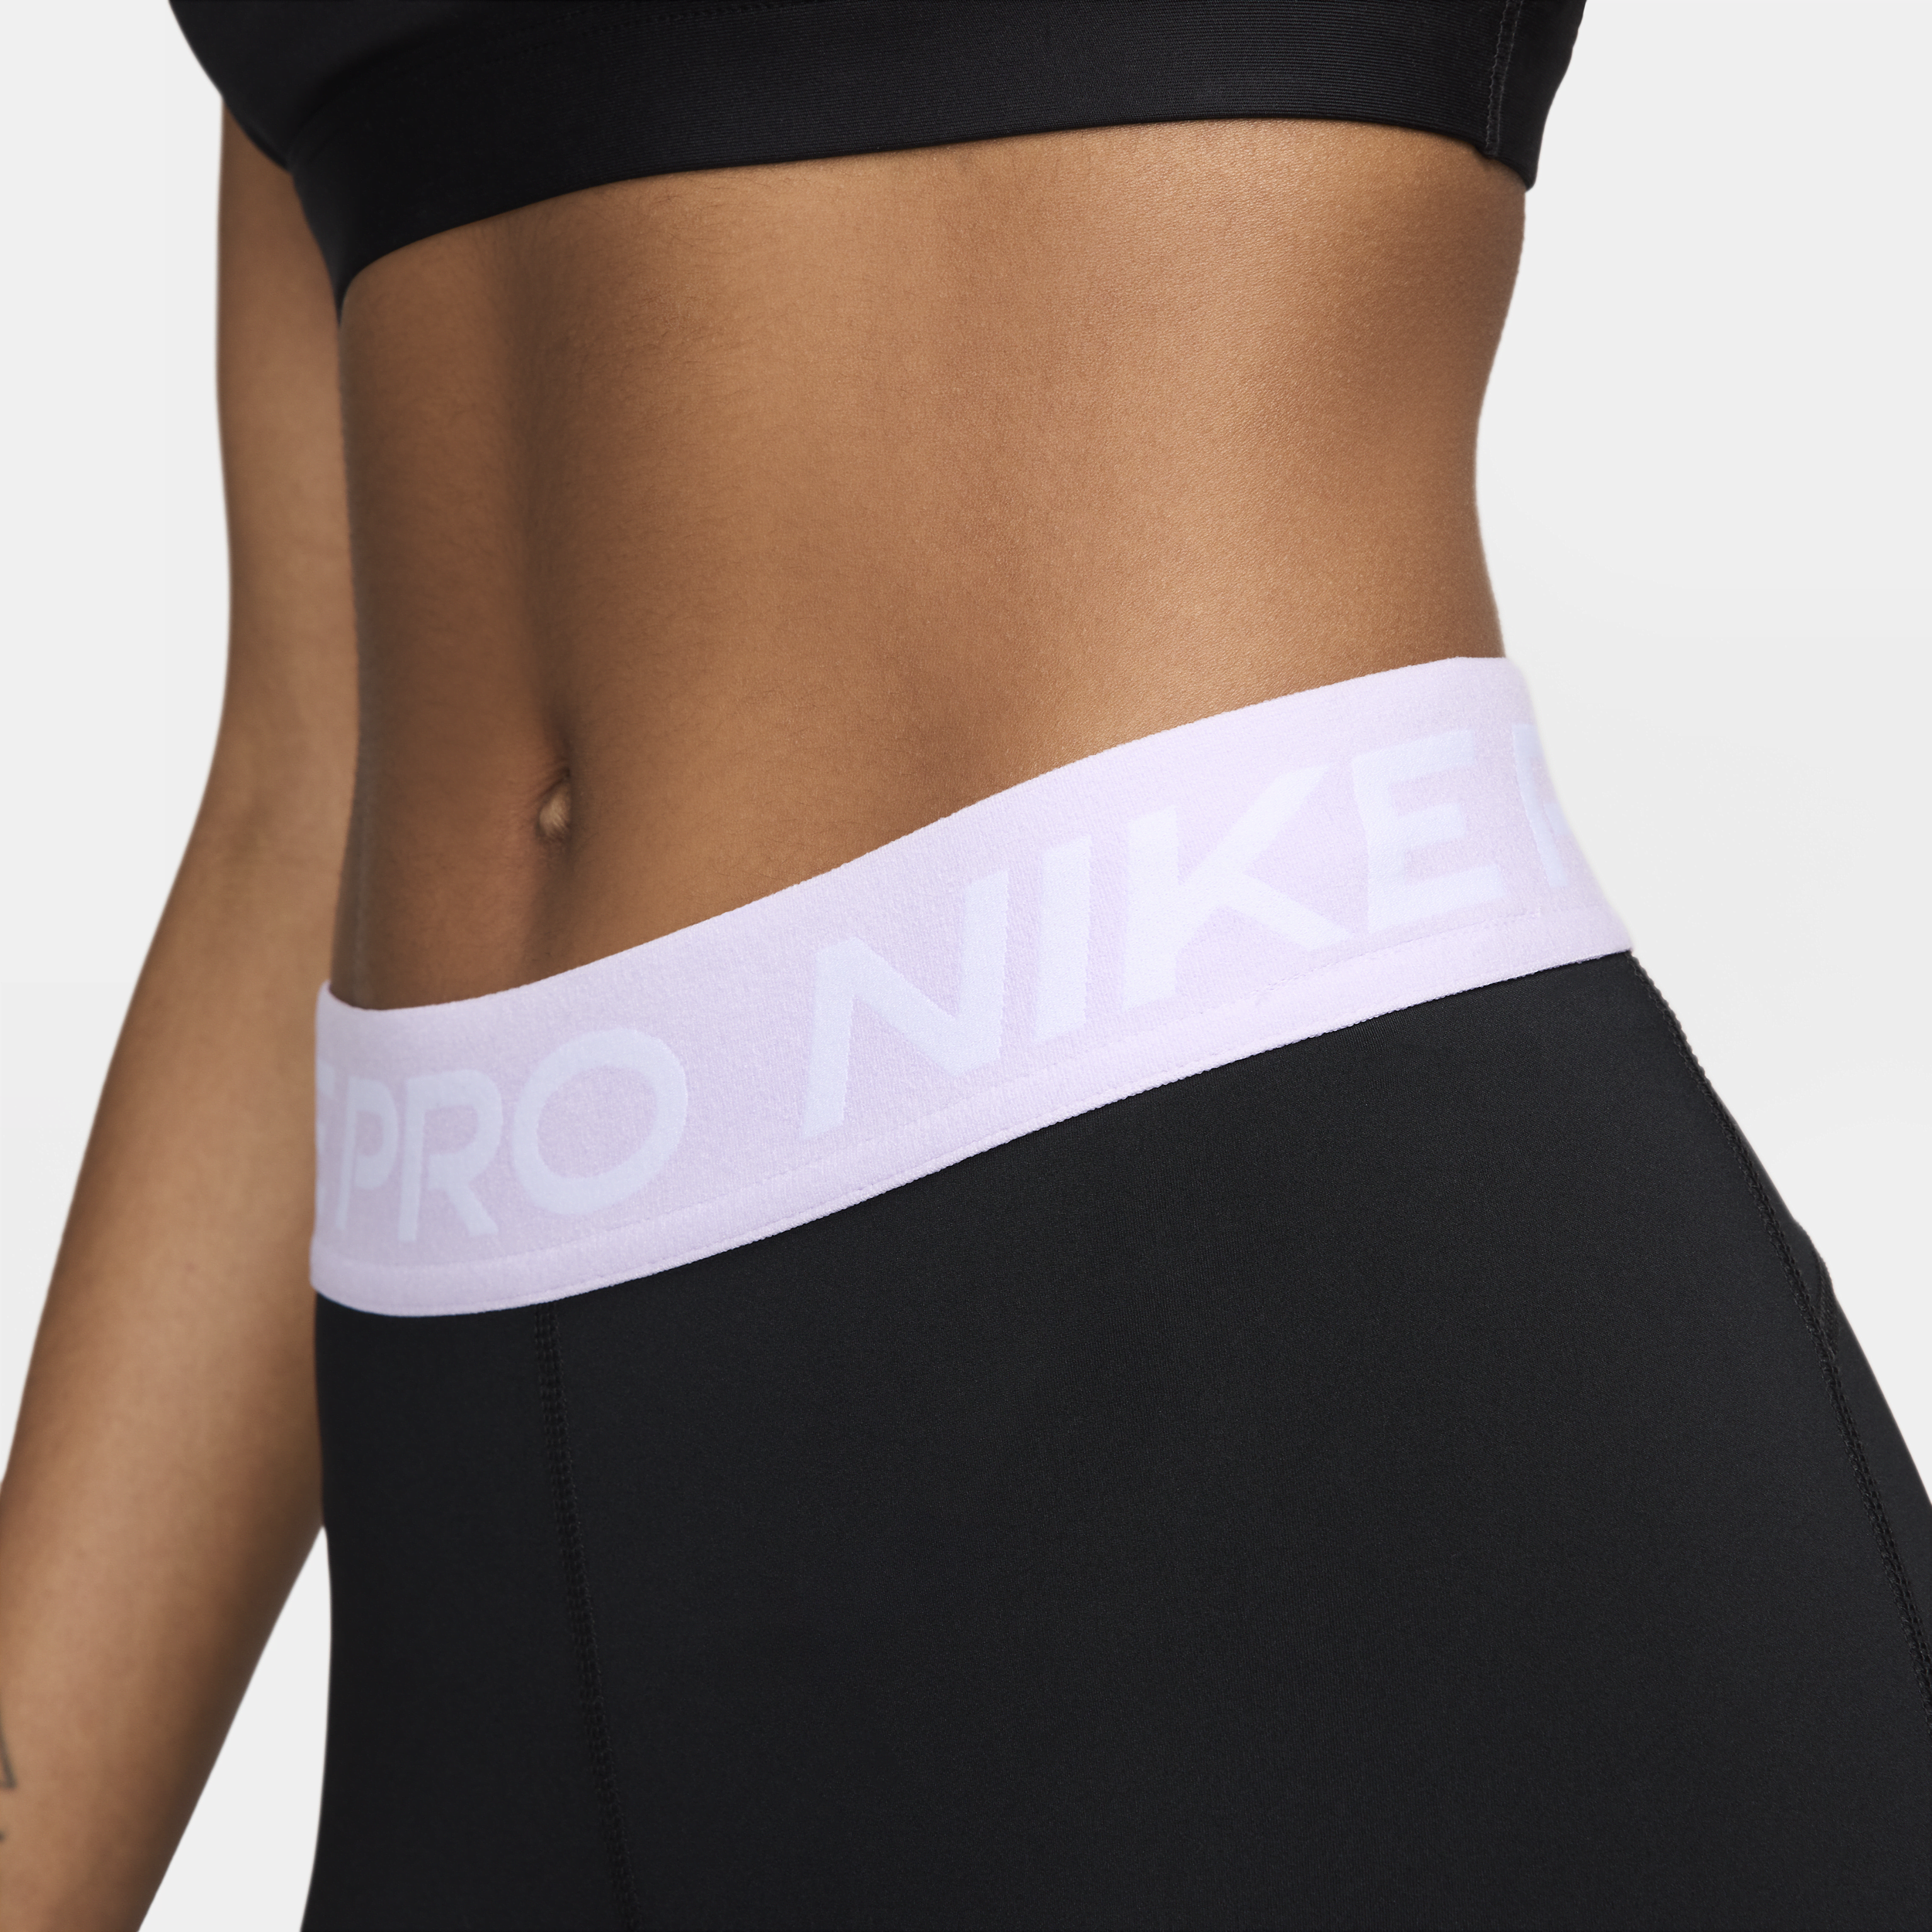 Nike Pro Legging met halfhoge taille en mesh vlakken voor dames Zwart